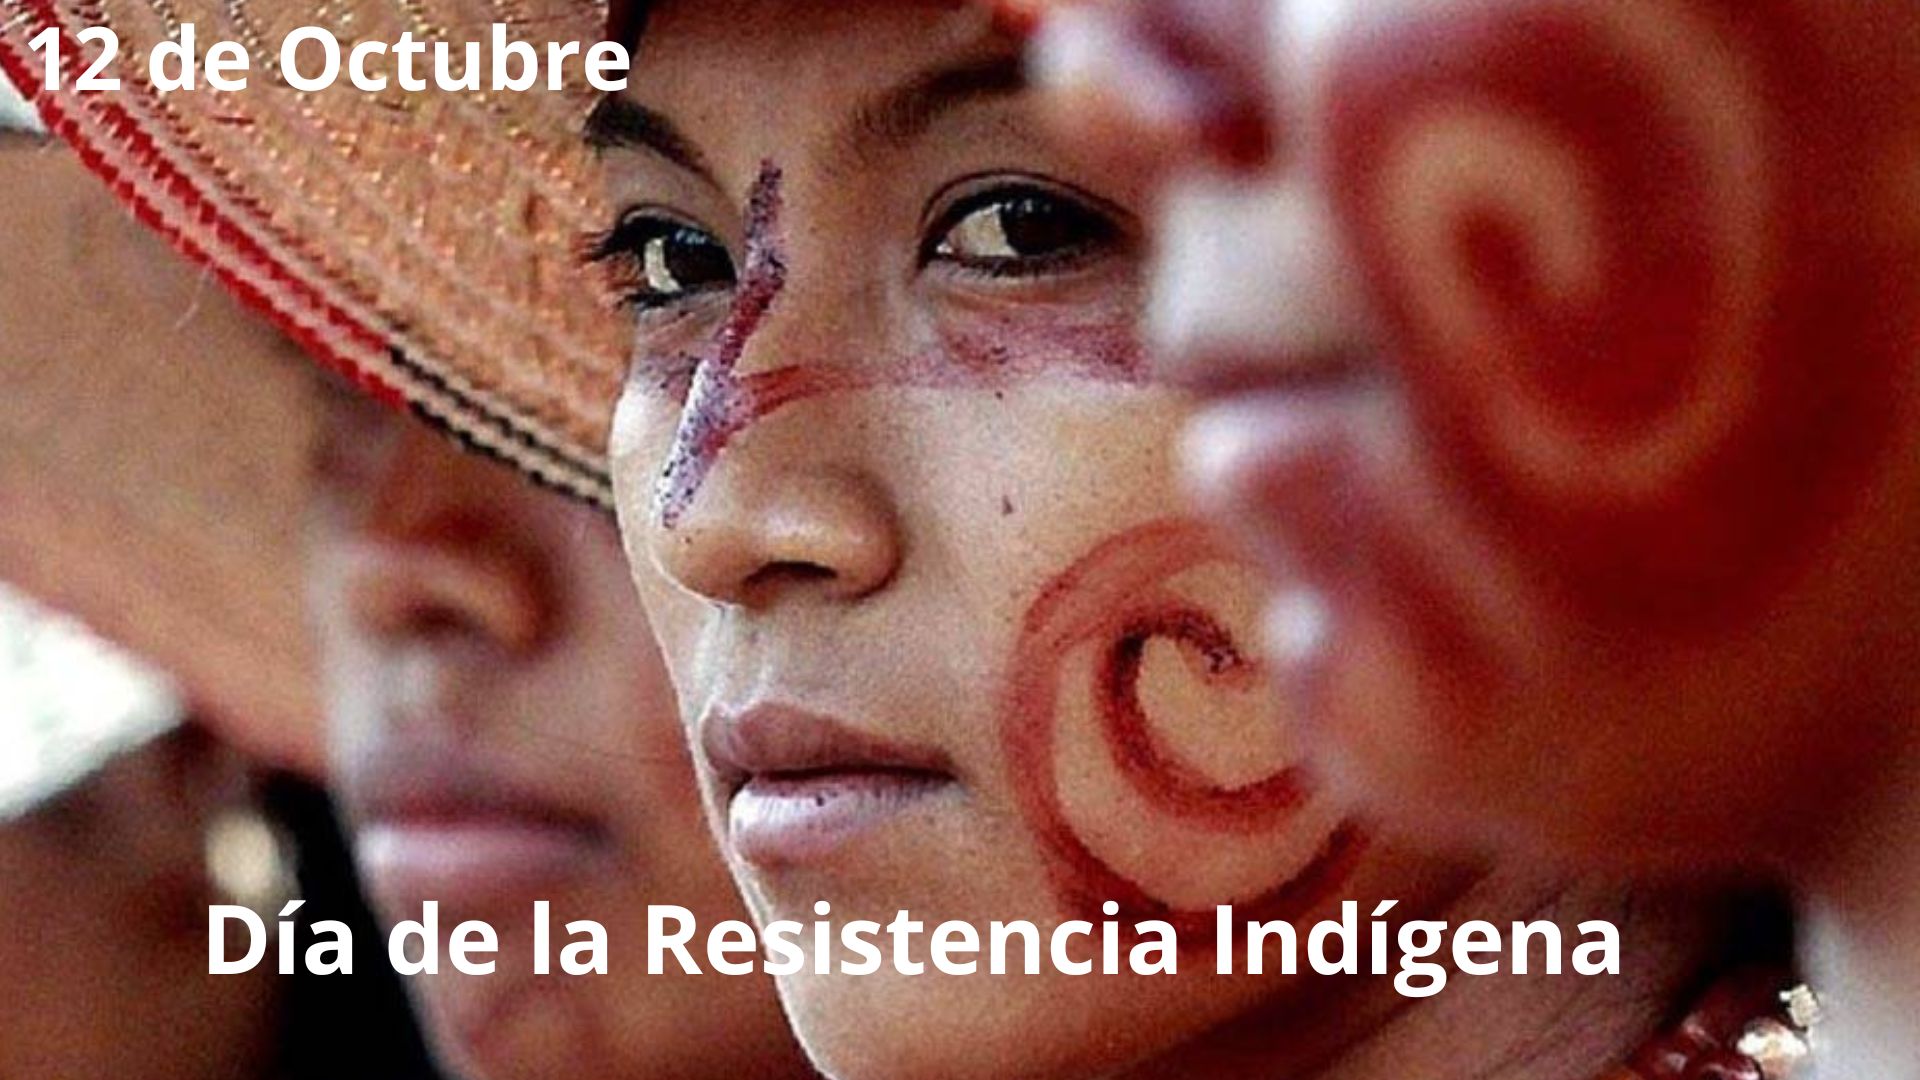 Día de la Resistencia Indígena: 12 de Octubre